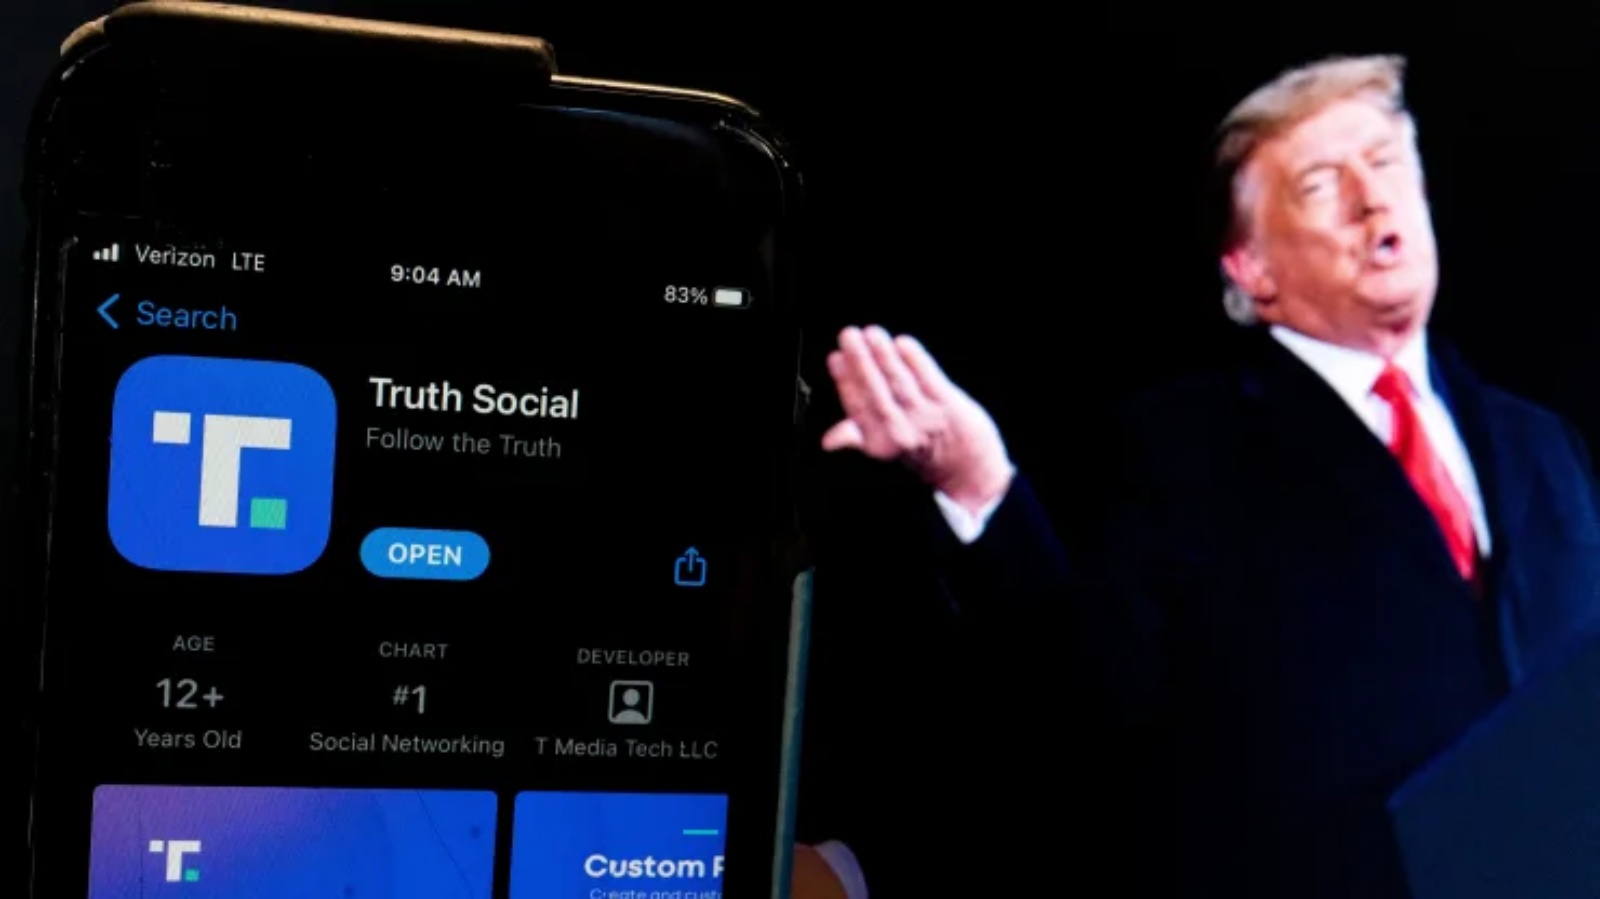 صورة للرئيس السابق دونالد ترامب بجوار شاشة الهاتف التي تعرض تطبيق Truth Social، في واشنطن العاصمة، في 21 شباط (فبراير) 2022